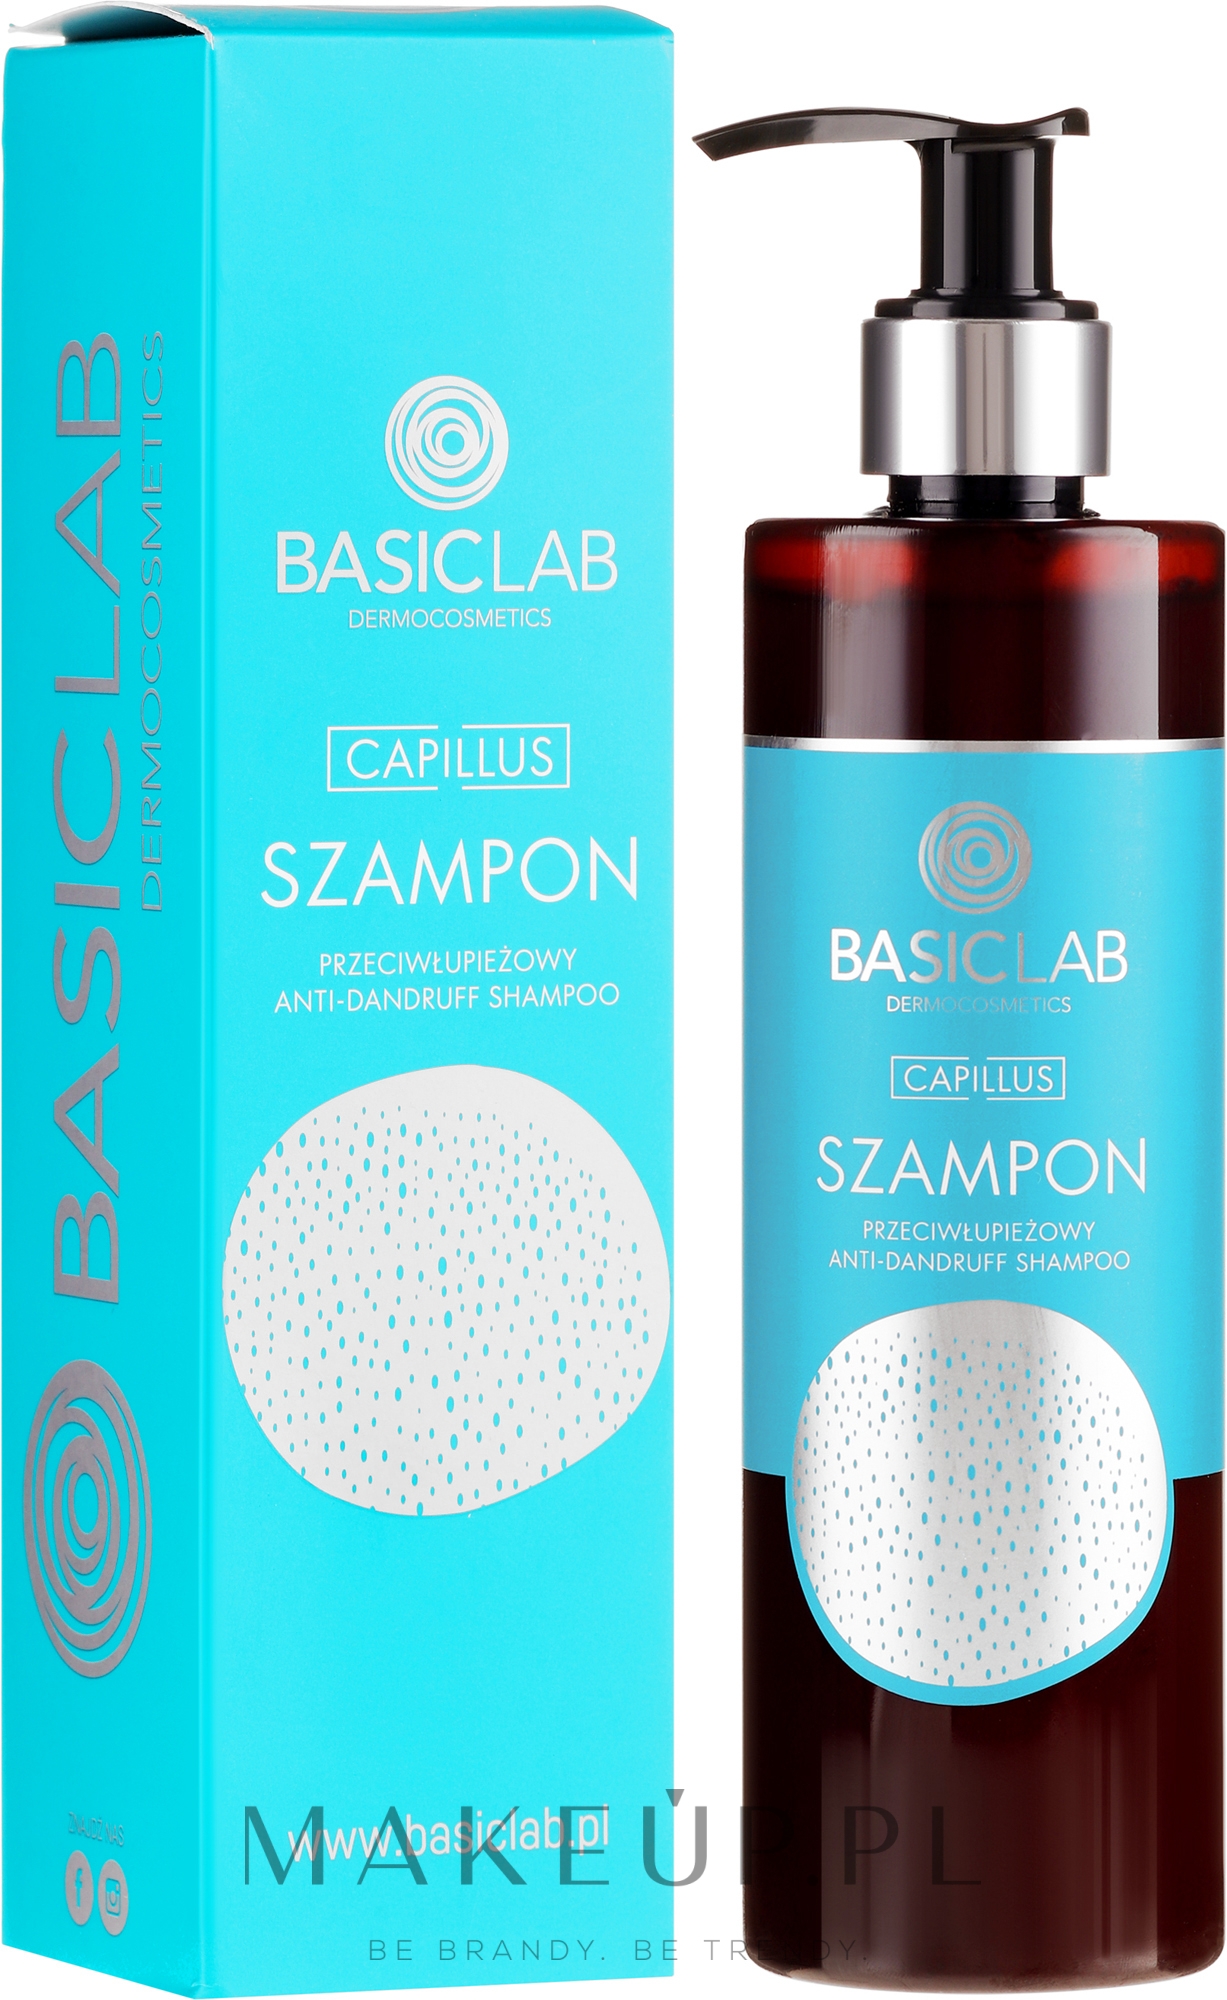 basiclab dermocosmetics capillus szampon przeciwłupieżowy